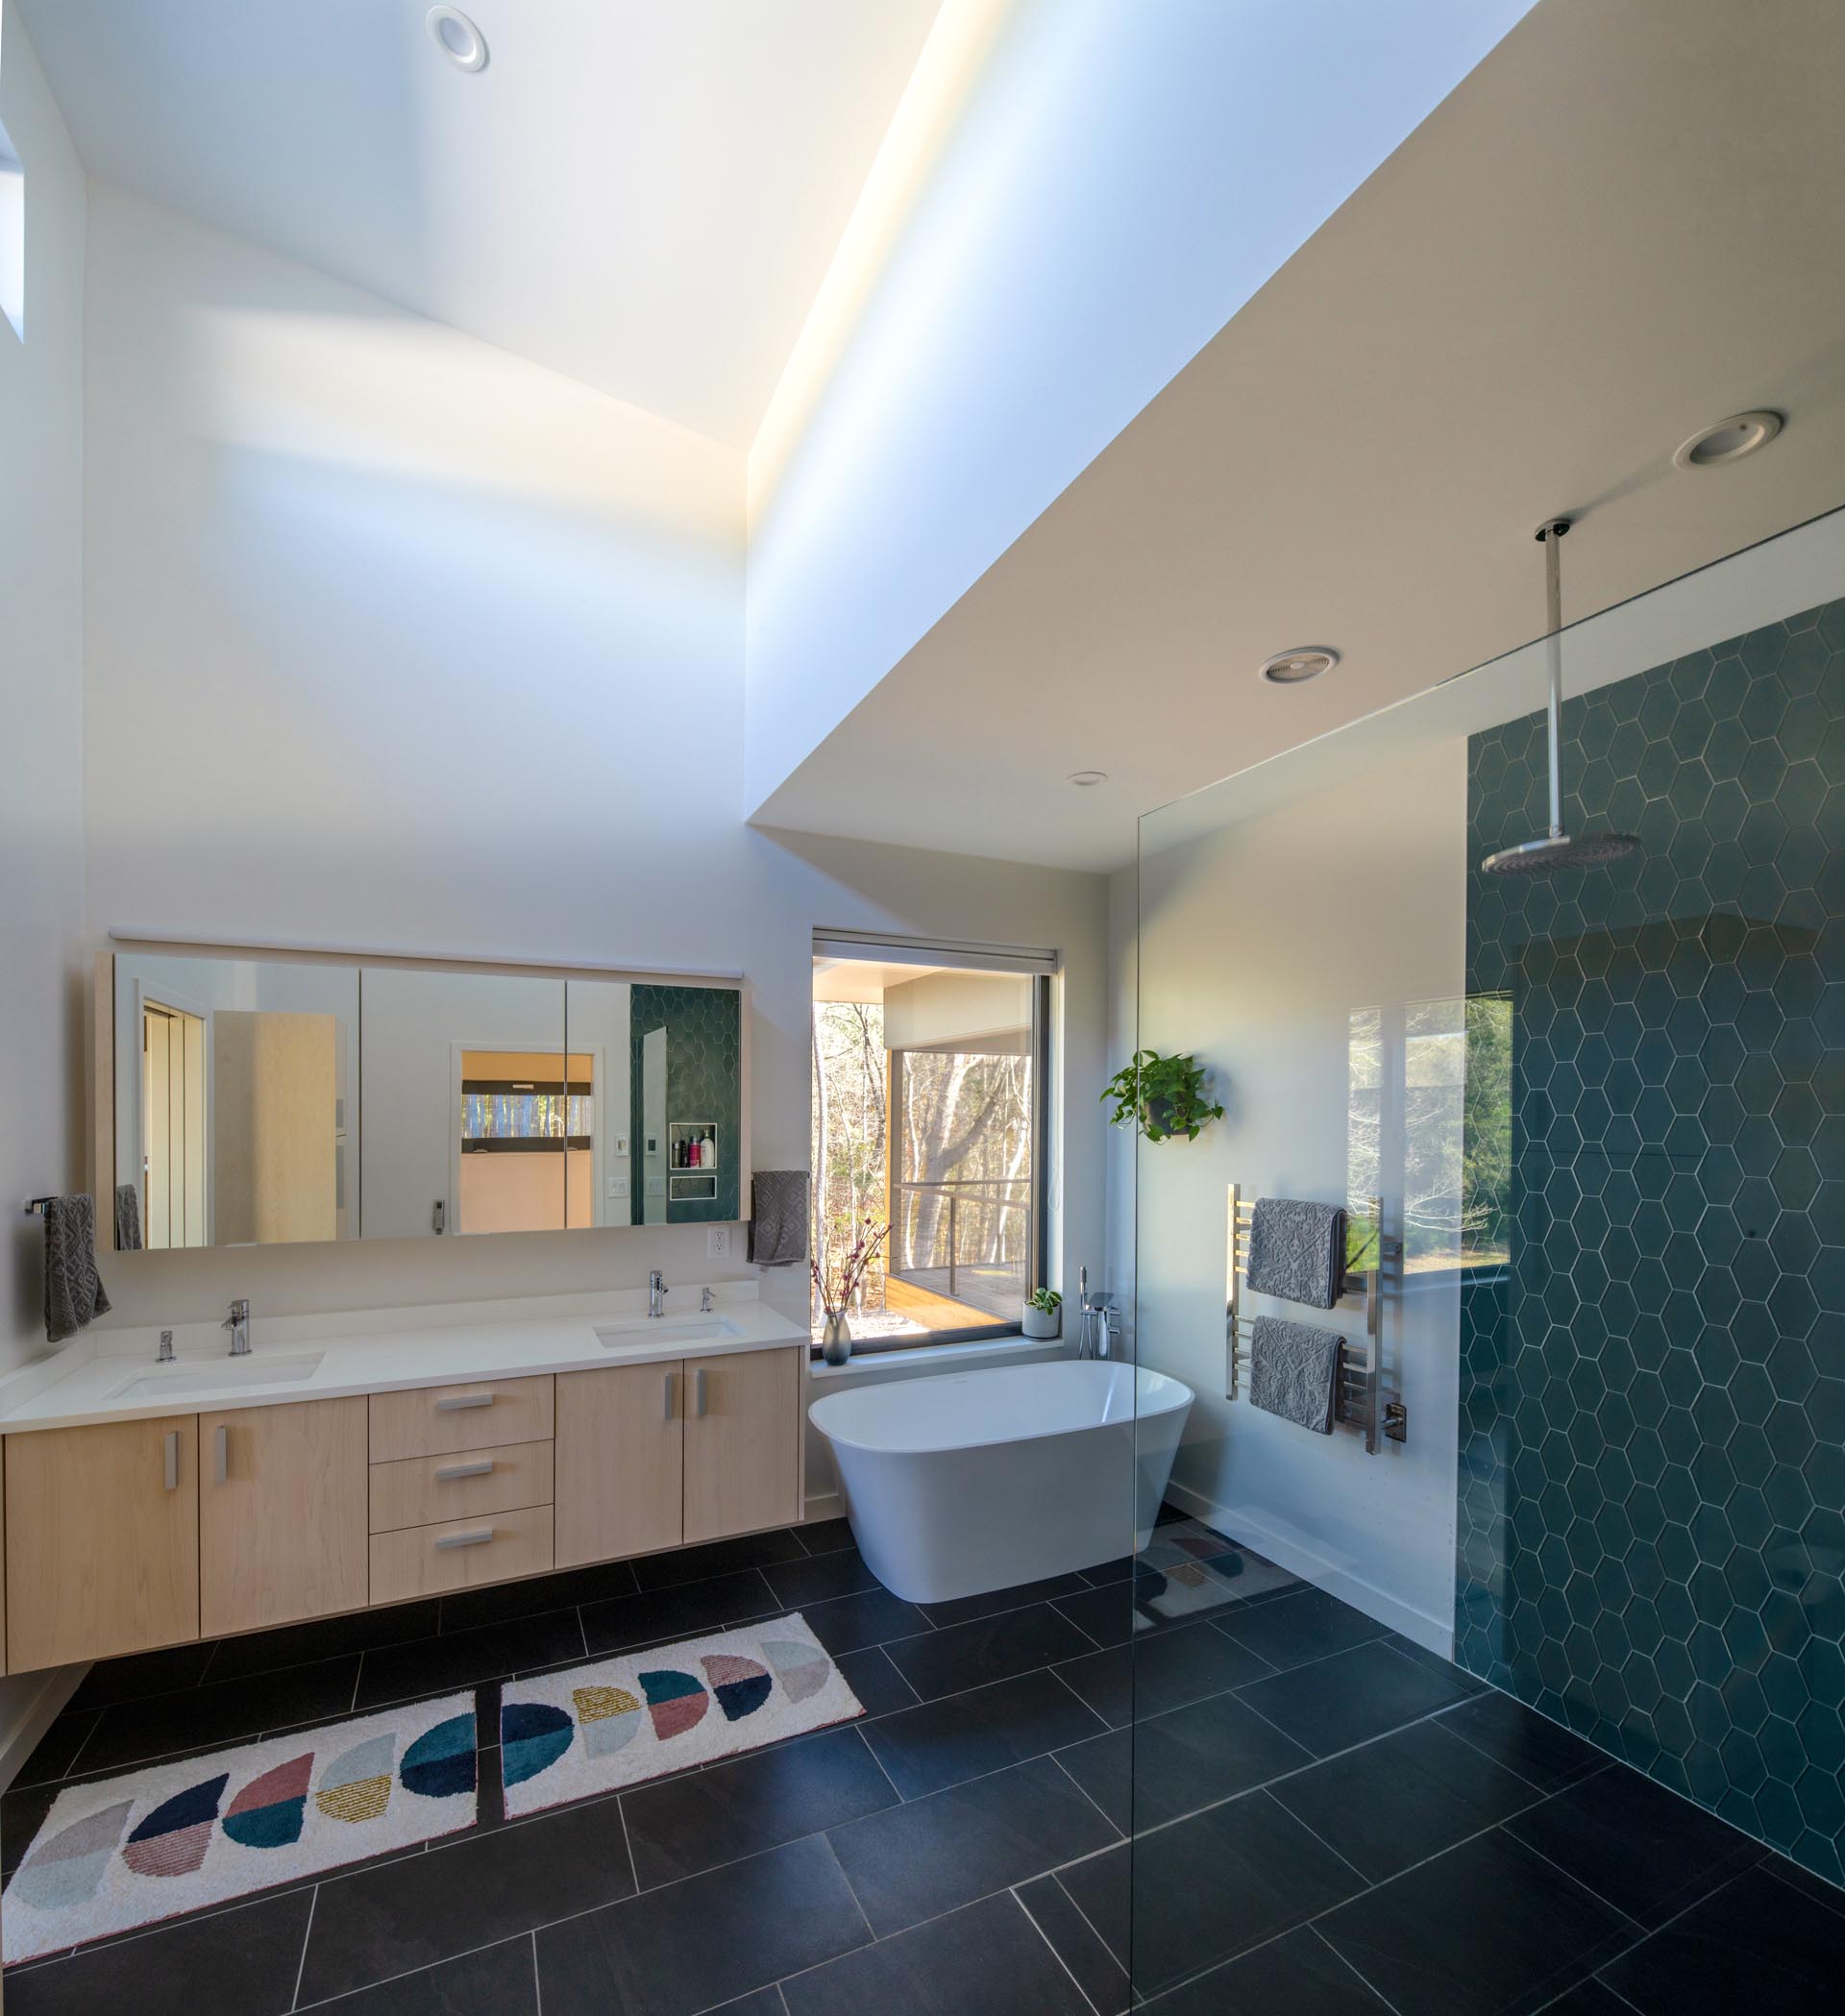 Эта главная ванная комната, похожая на спа, имеет высокий потолок, черную плитку на полу, двойную раковину, глубокую ванну и душ с акцентом на стене из шестиугольной плитки.